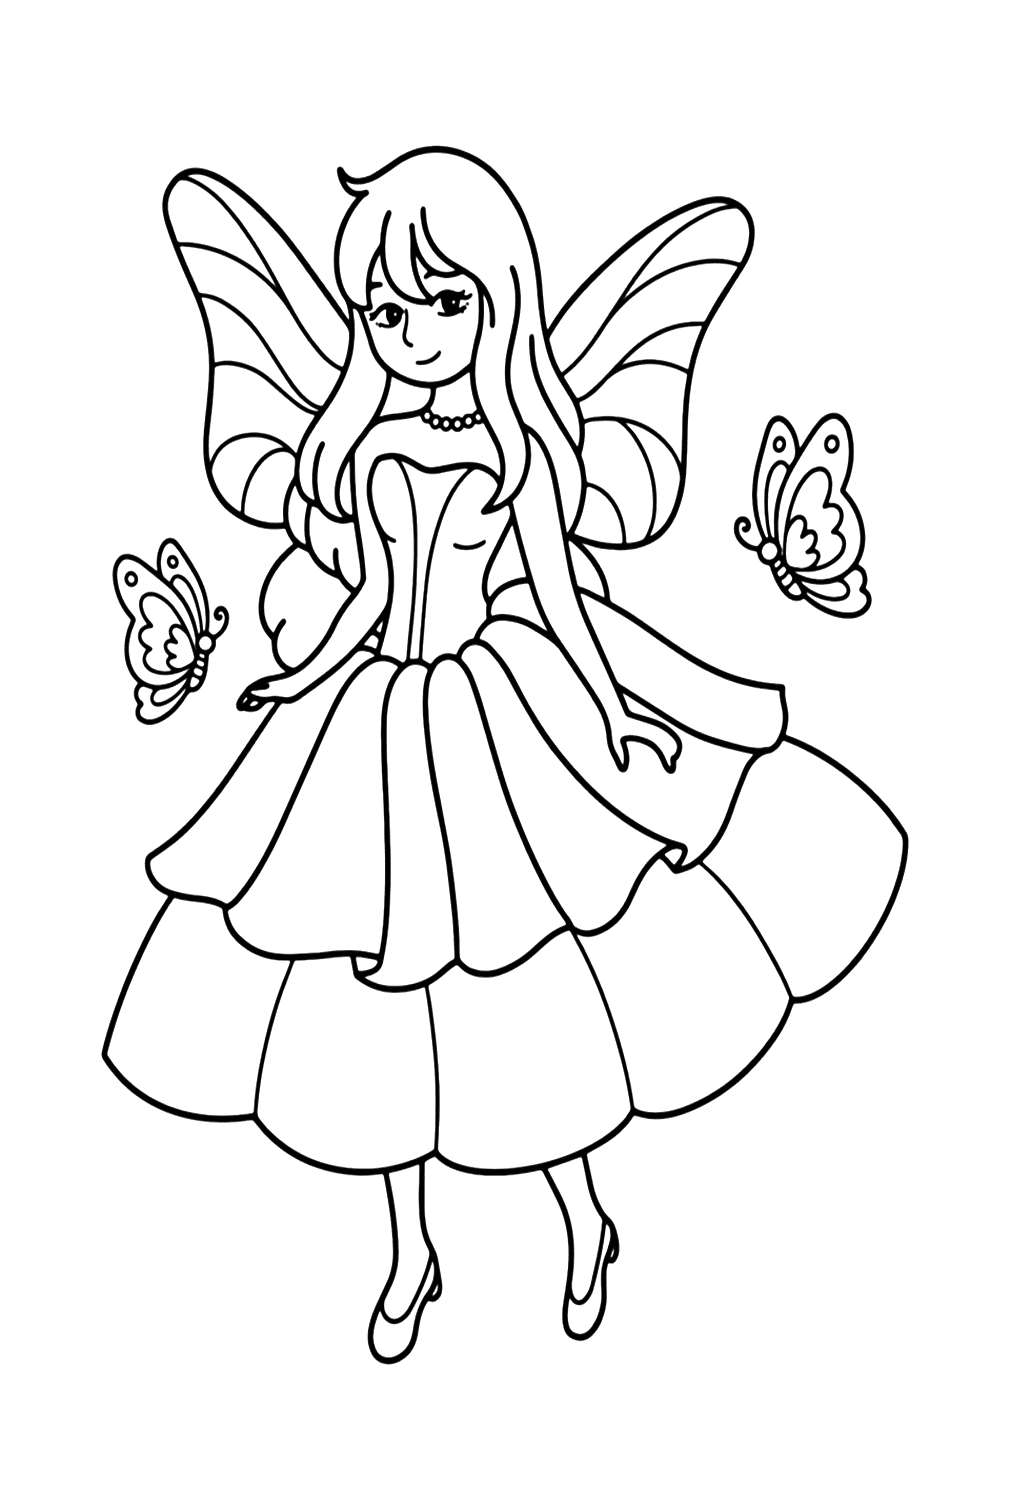 Página para colorir da princesa Fary de Fairy